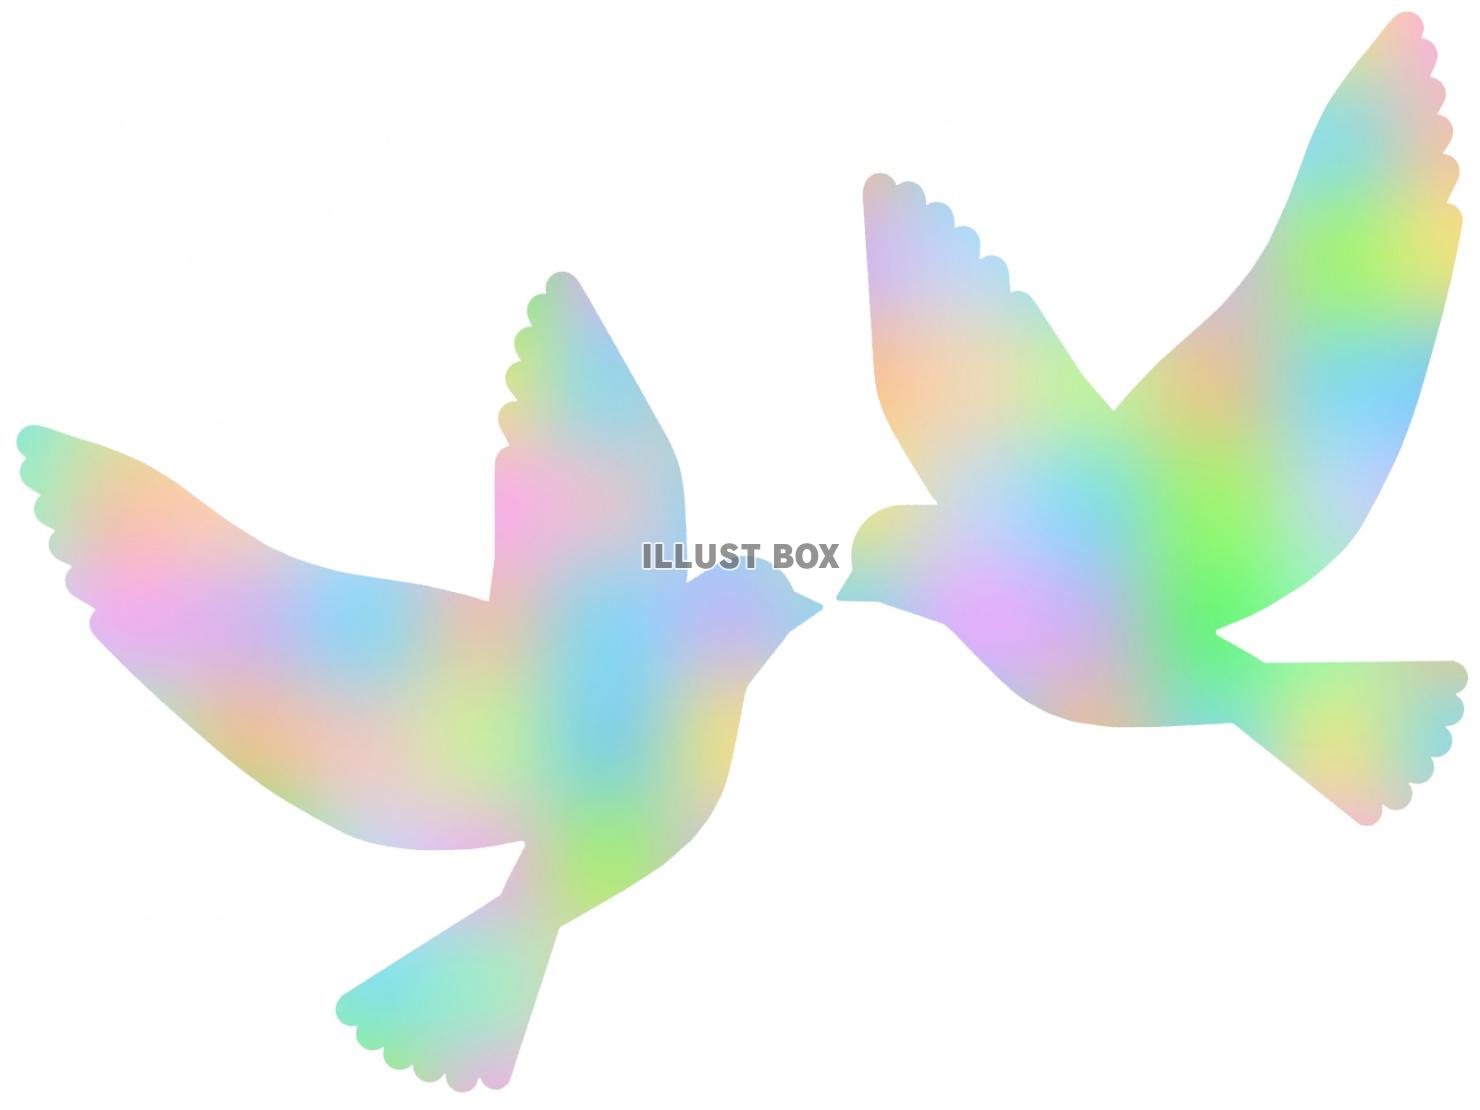 平和の象徴鳩の壁紙画像シンプル背景素材イラスト